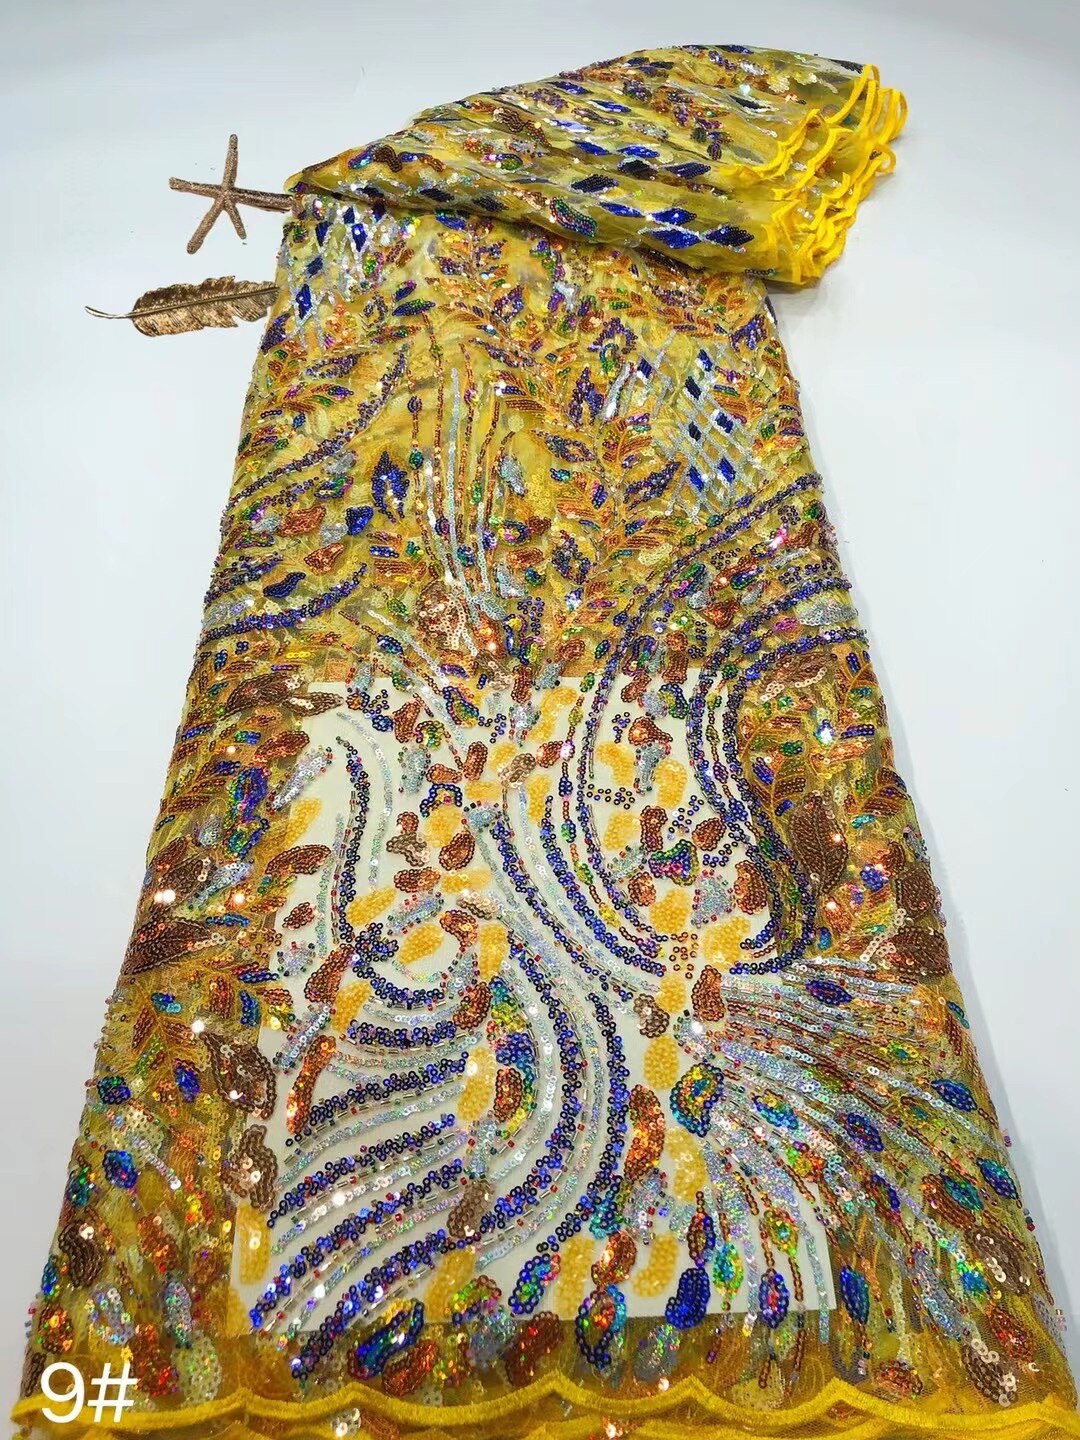 5 YARDS / 15 COLORI / Tessuto Gabin per abiti da cerimonia nuziale con paillettes, ricami in rilievo, rete glitterata, pizzo scintillante